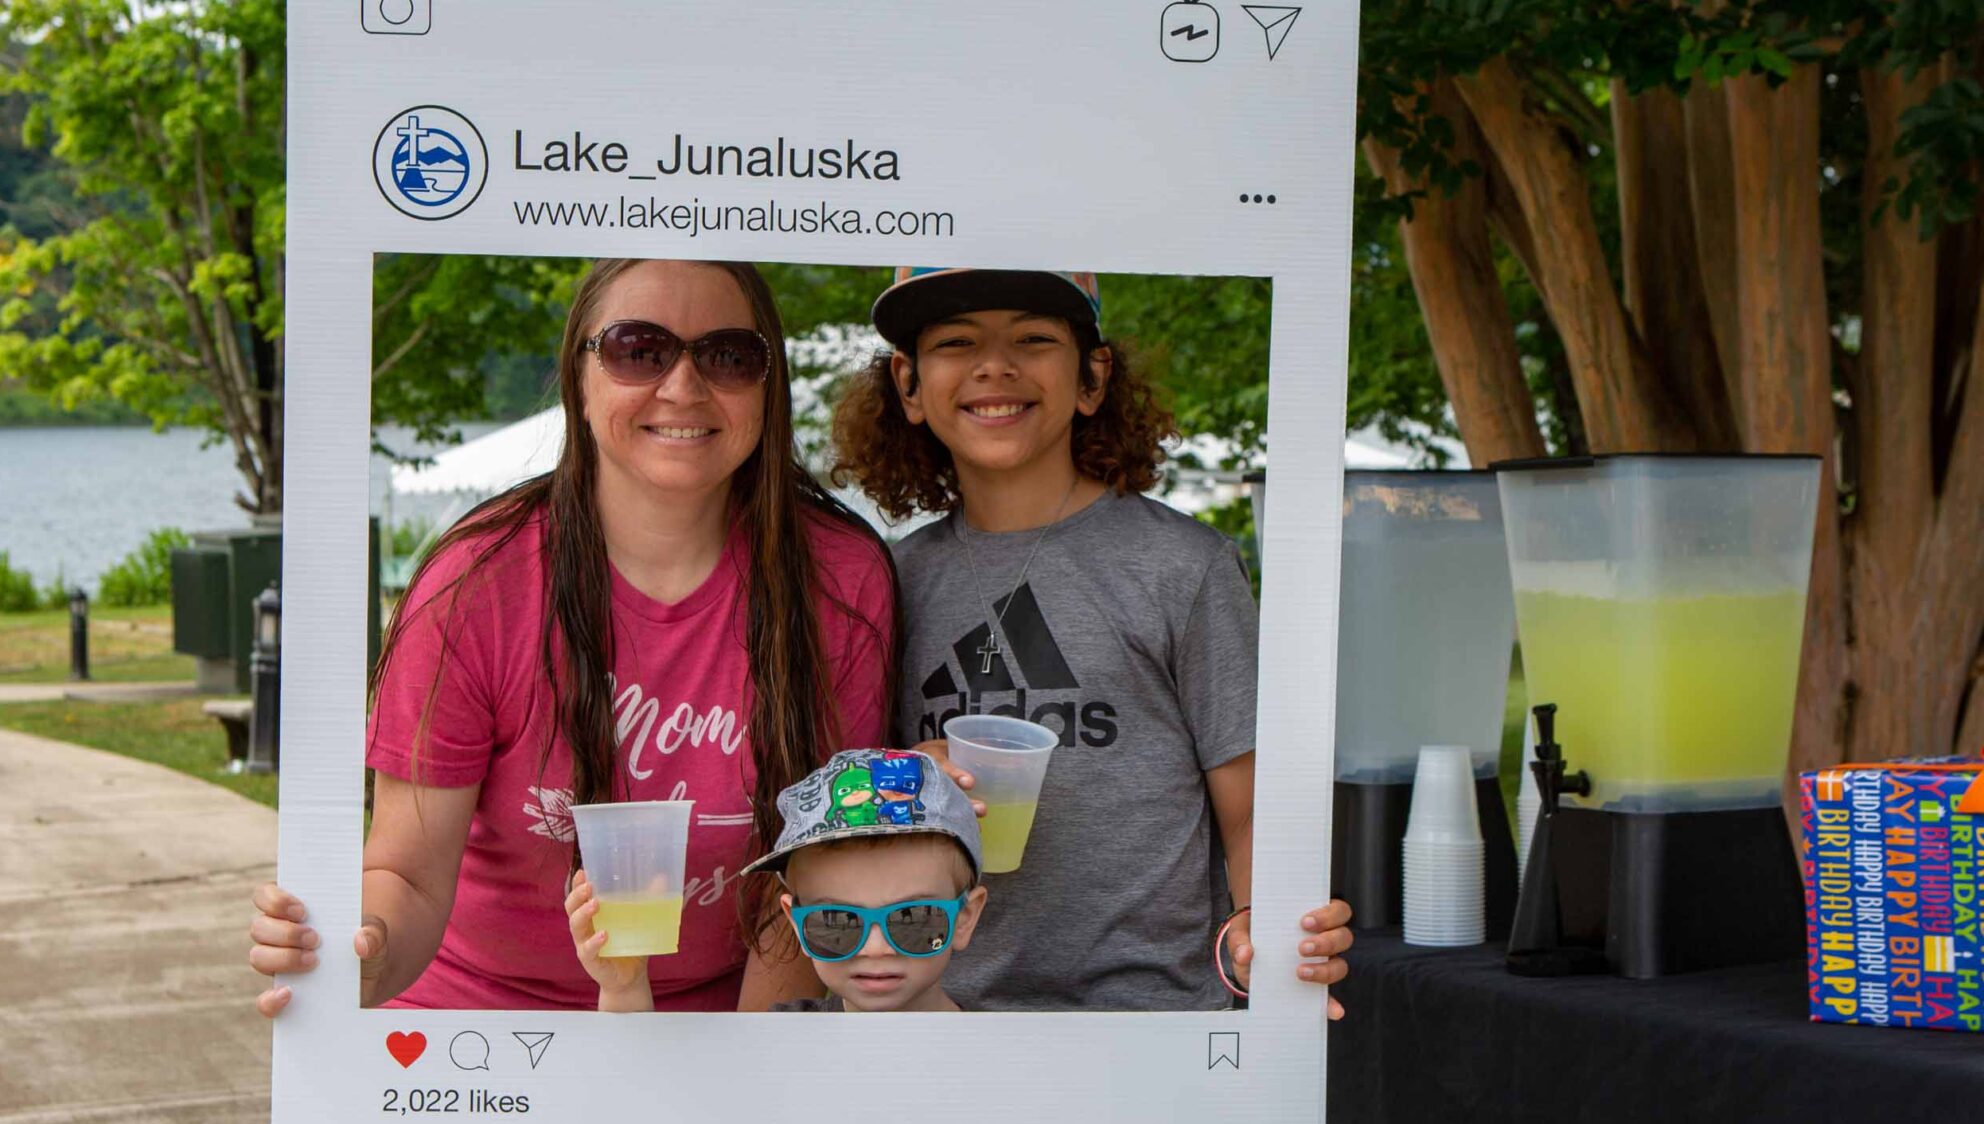 Lake Junaluska Day selfie station